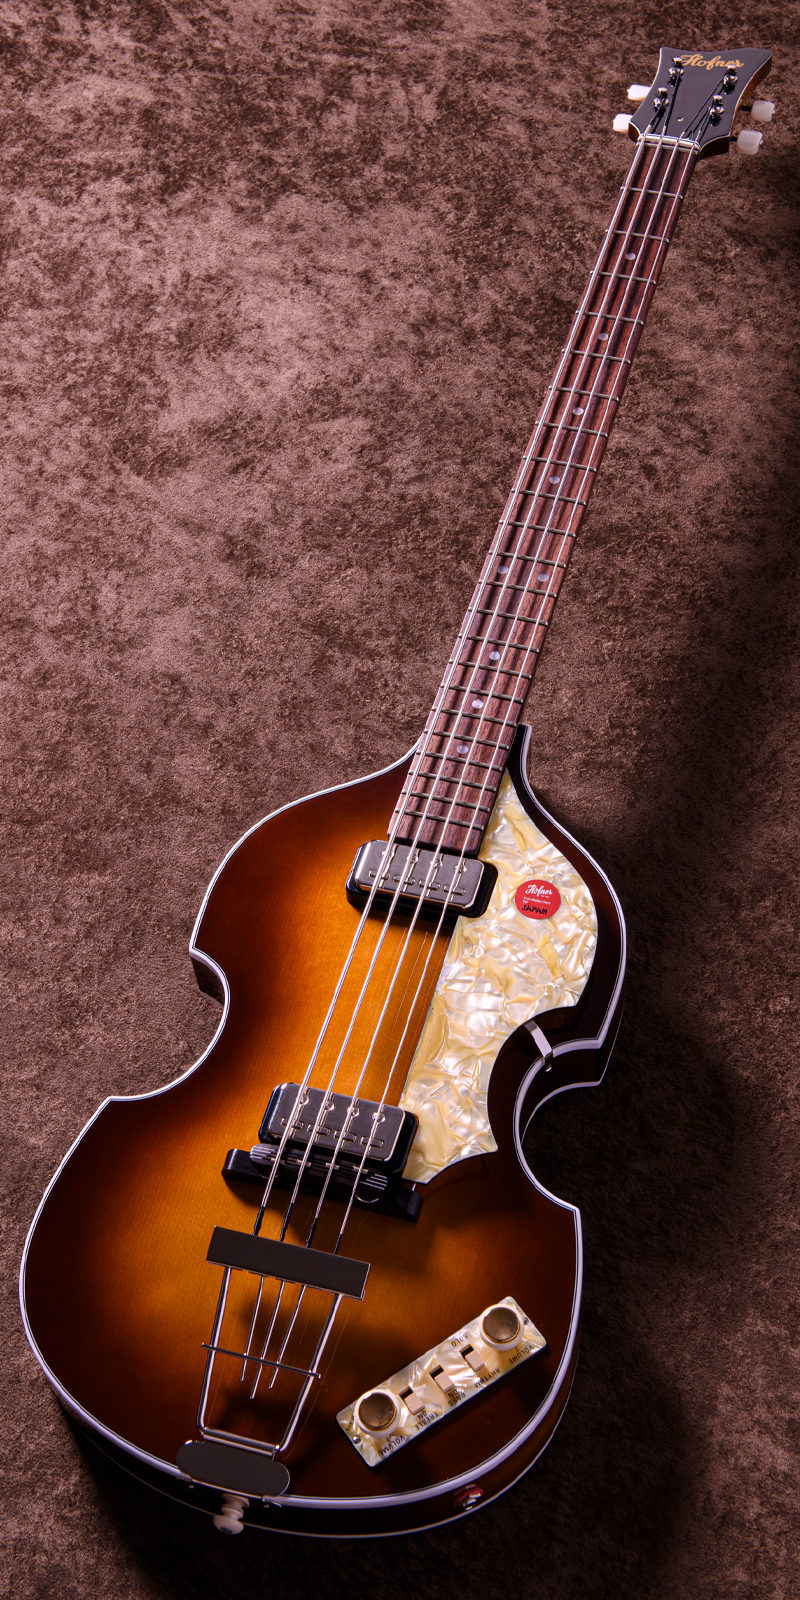 Höfner Violin Bass '63 - 60th Anniversary Edition